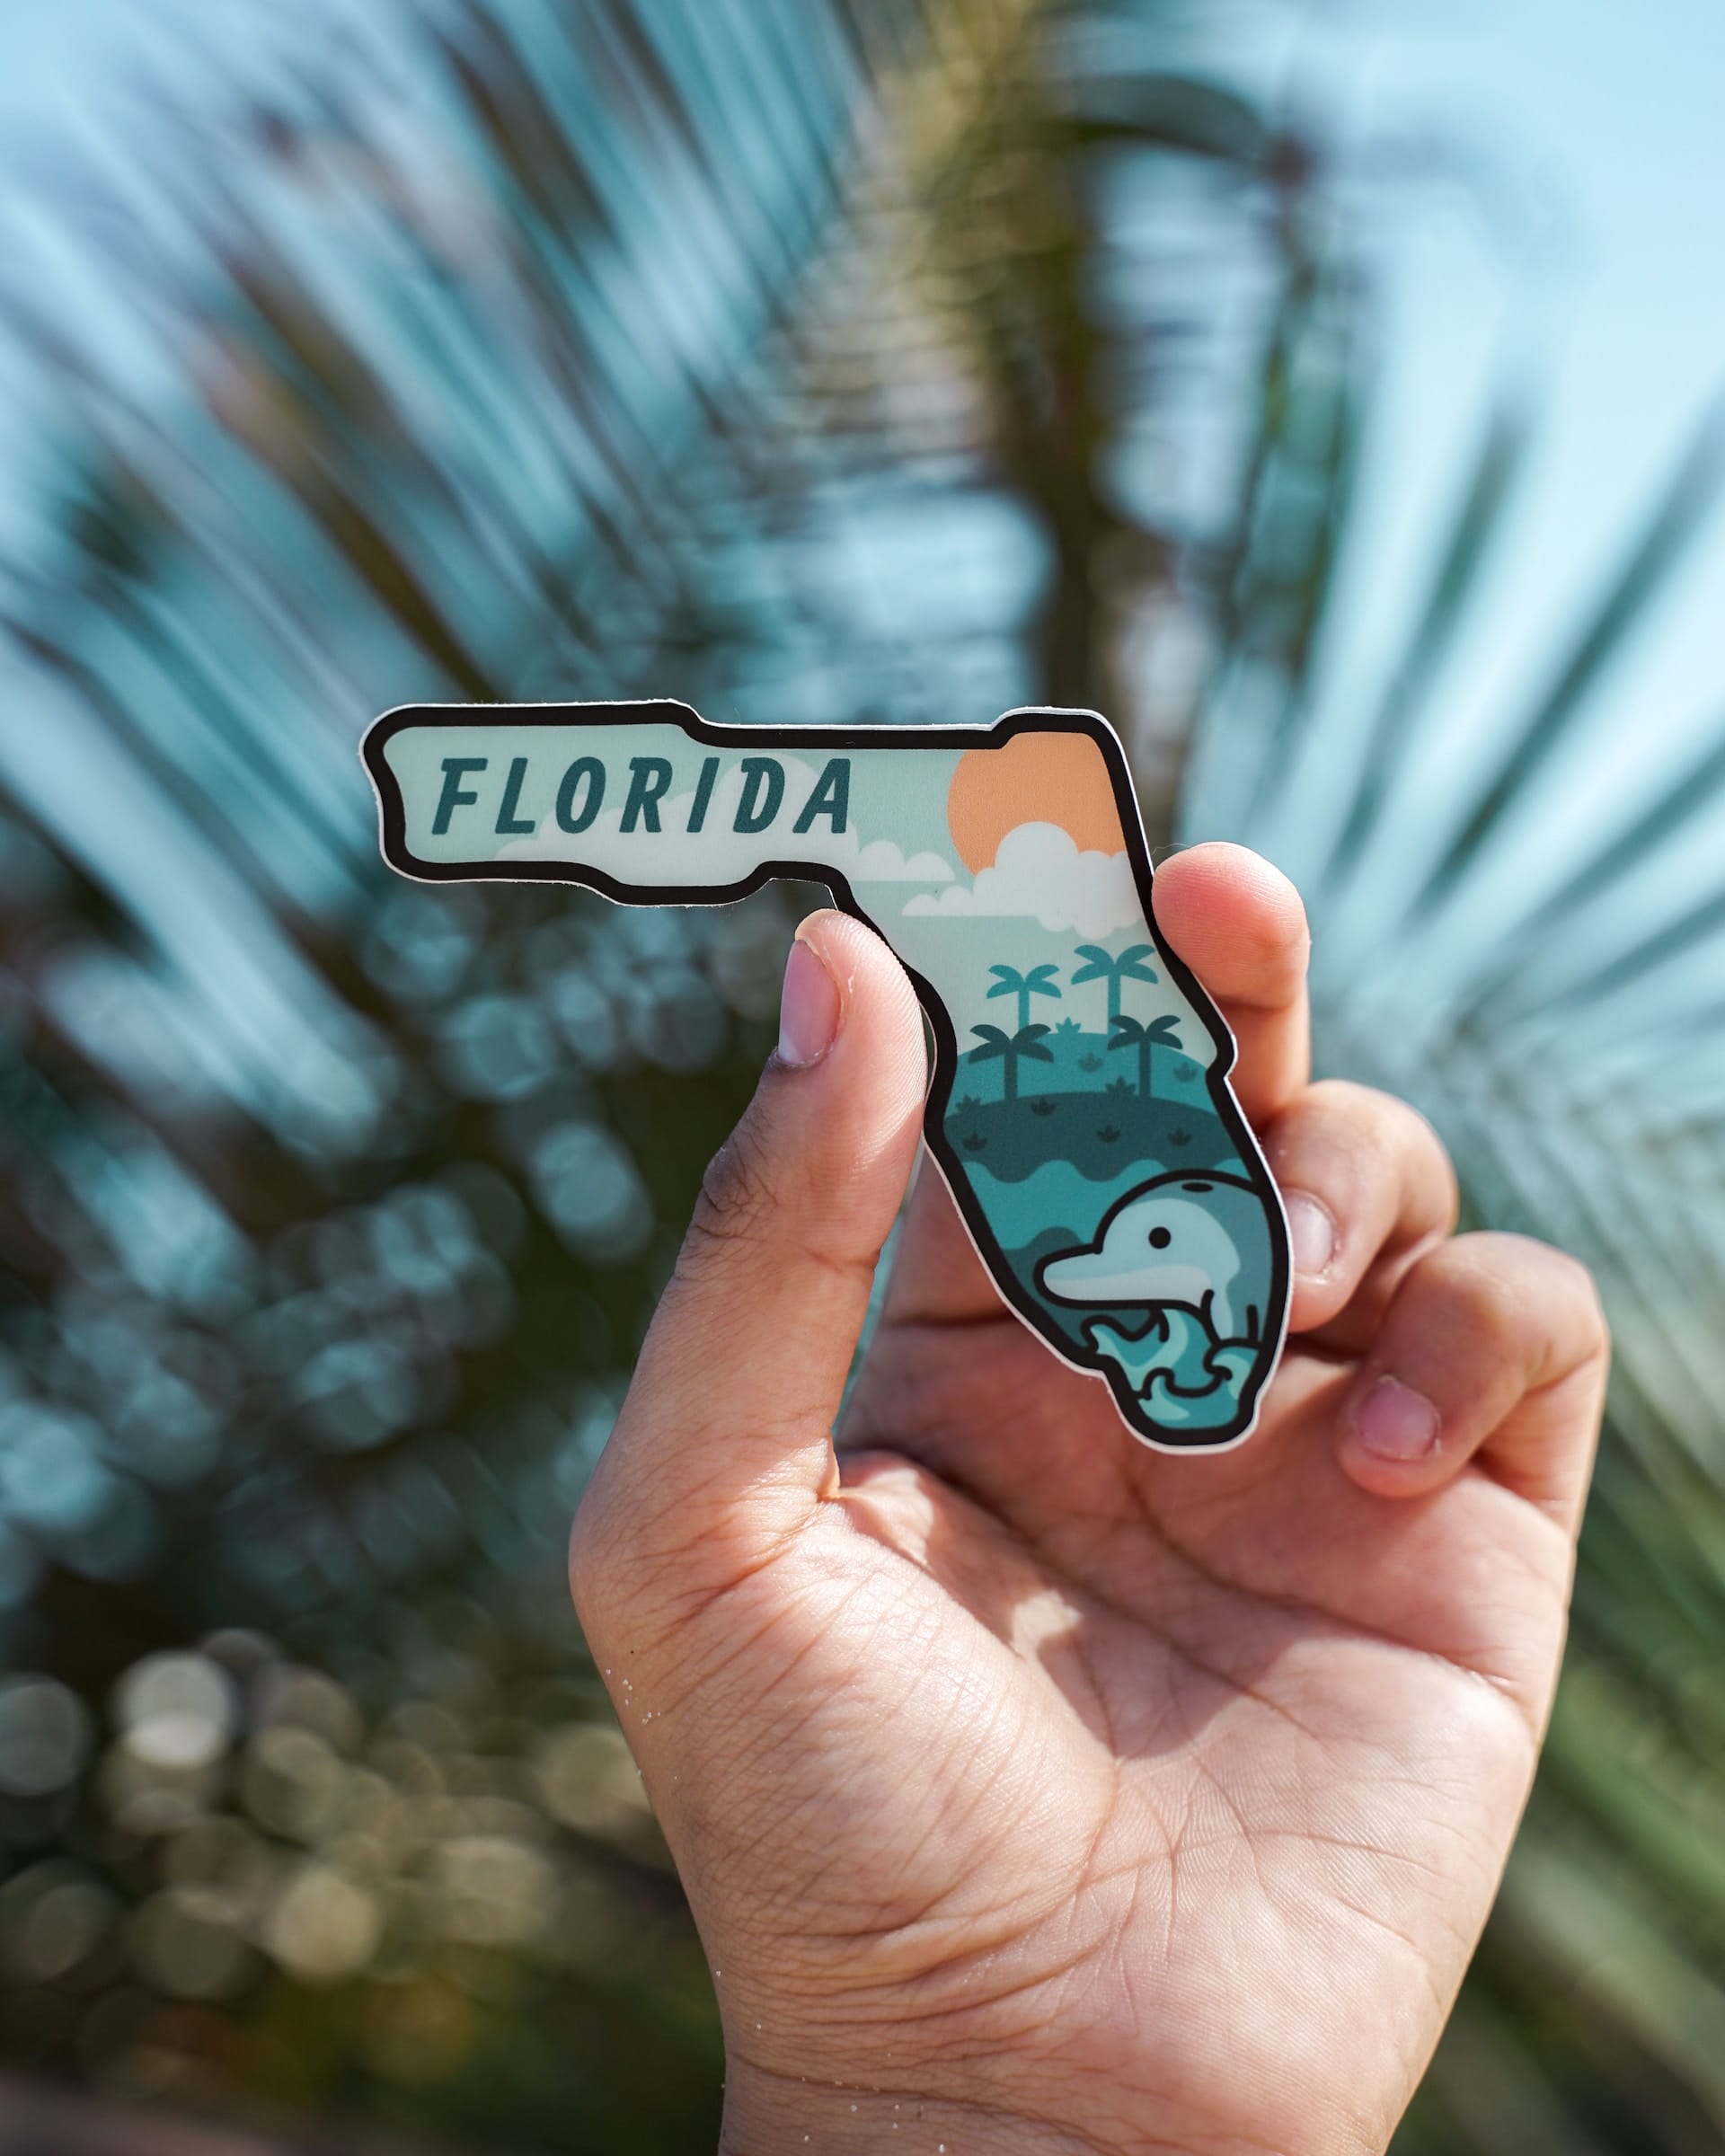 Florida souvenir near Holiday, Florida.